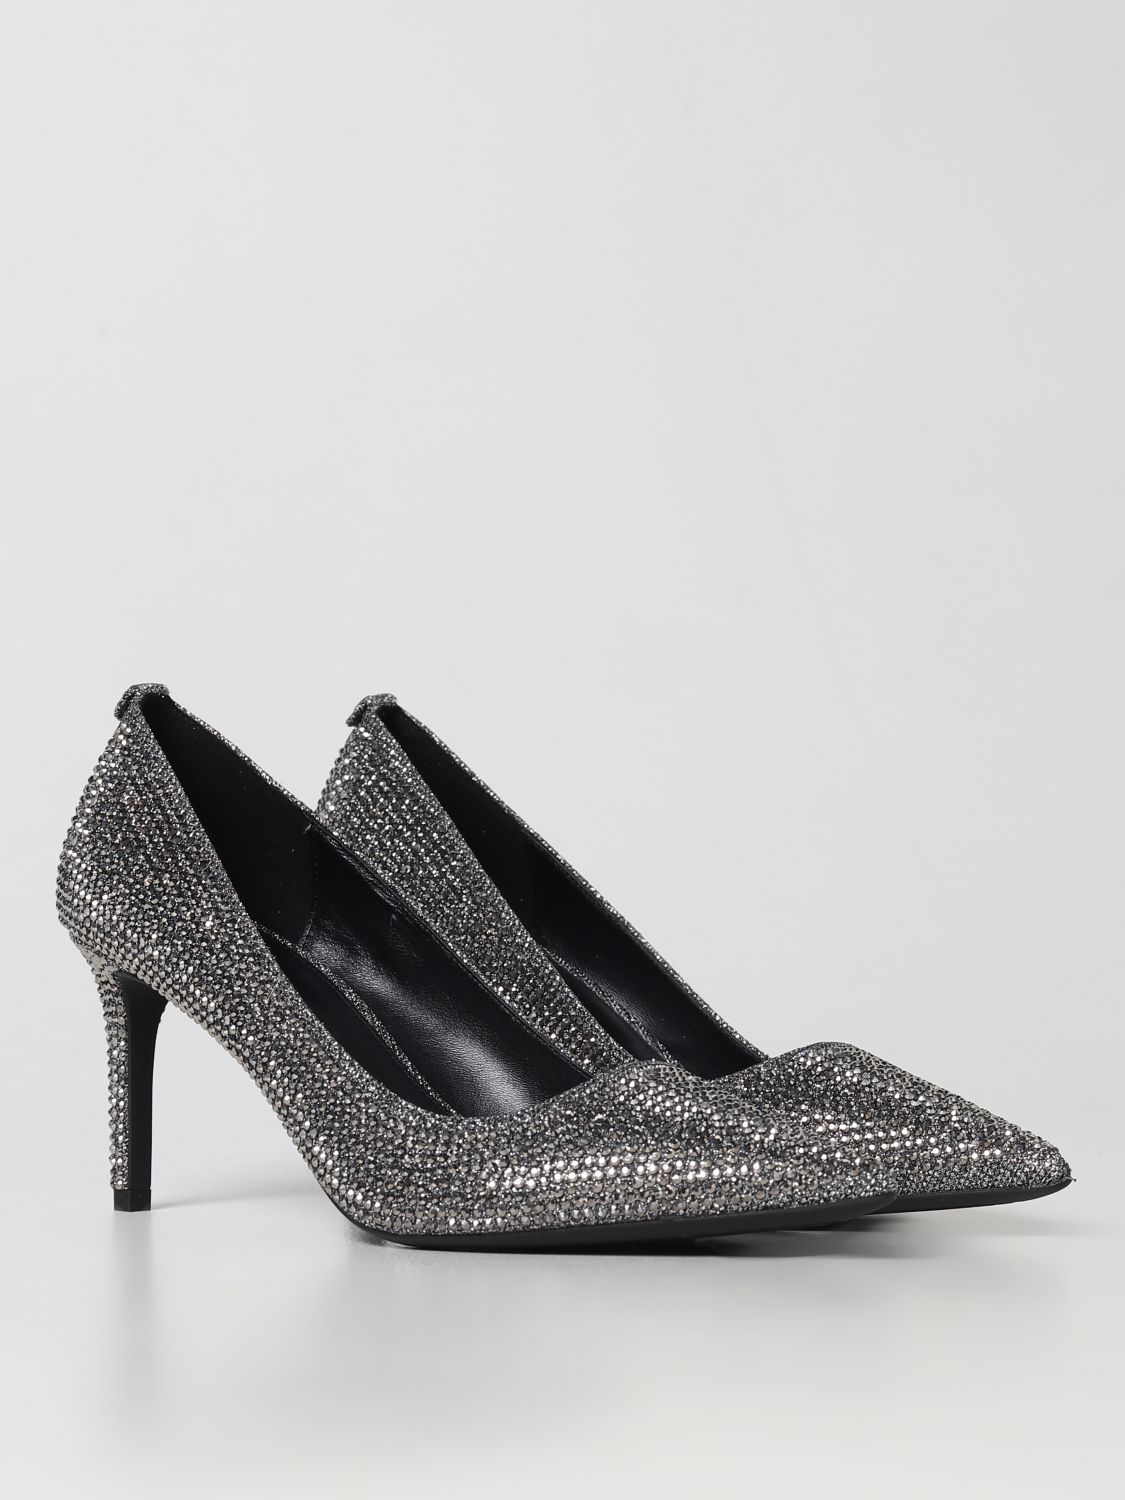 MICHAEL KORS: Zapatos de salón para mujer, Carbón | De SalÓN Kors 40F2HNMP1D en línea en GIGLIO.COM